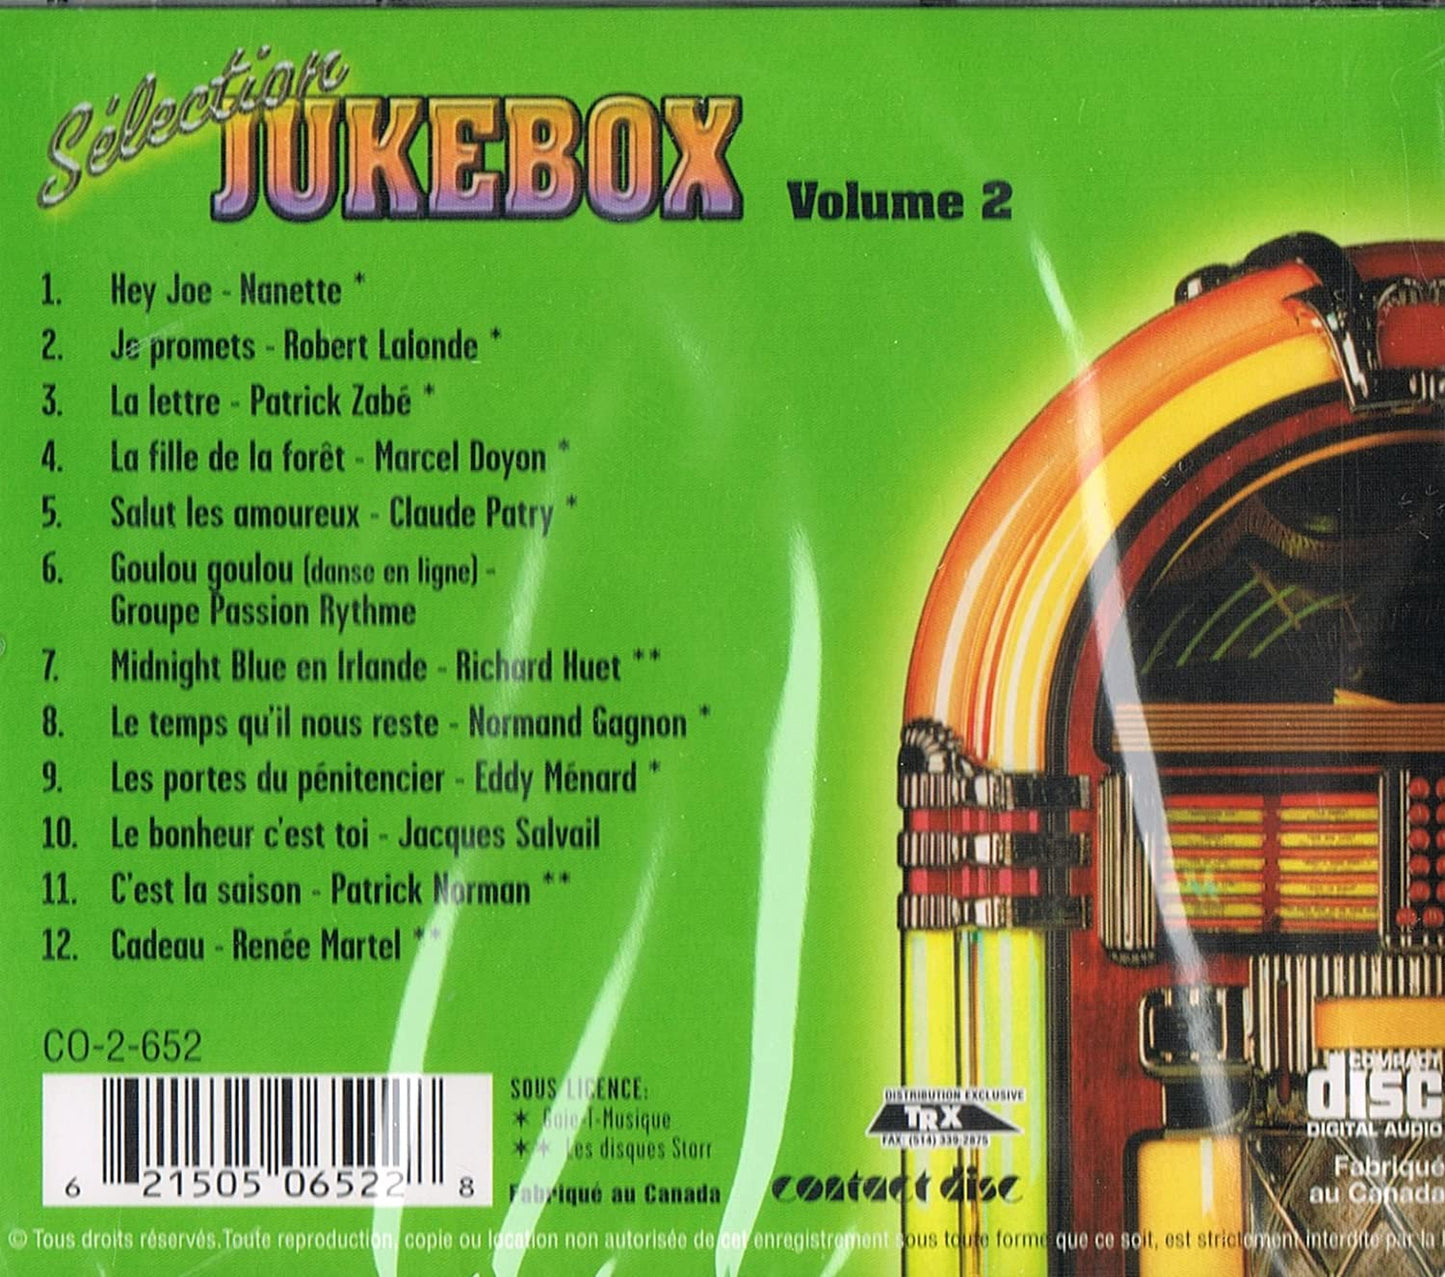 SELECTION JUKEBOX Vol. 2 [Audio CD] Artistes Variés